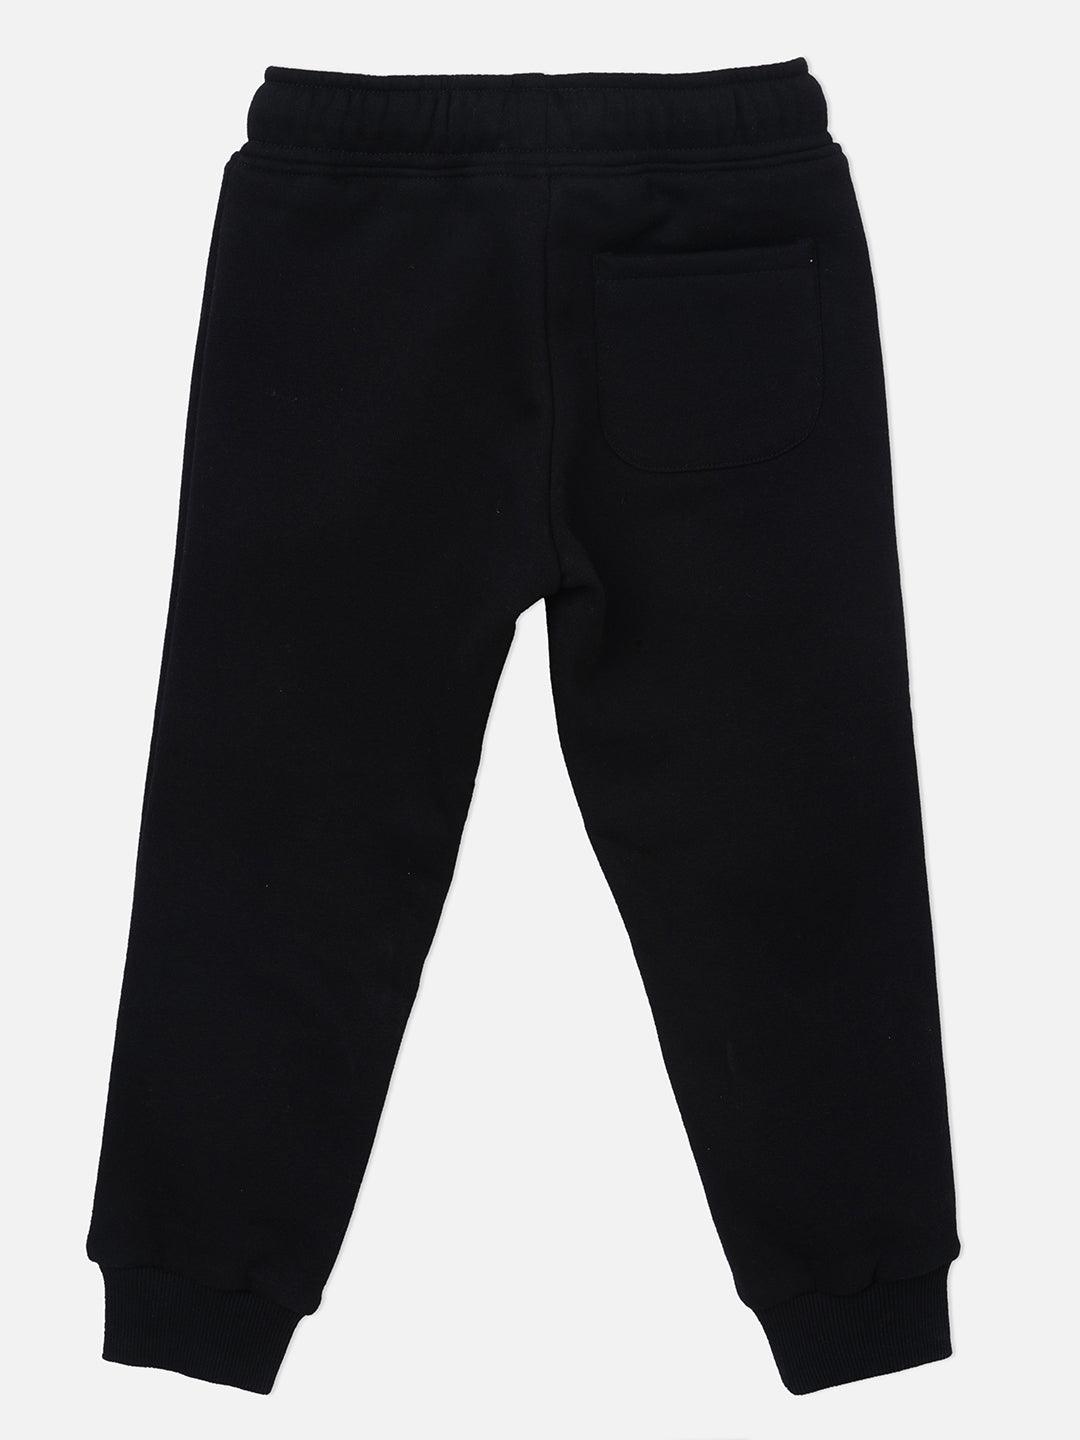 Black cotton blend solid regular fit track pants - Lagorii Kids